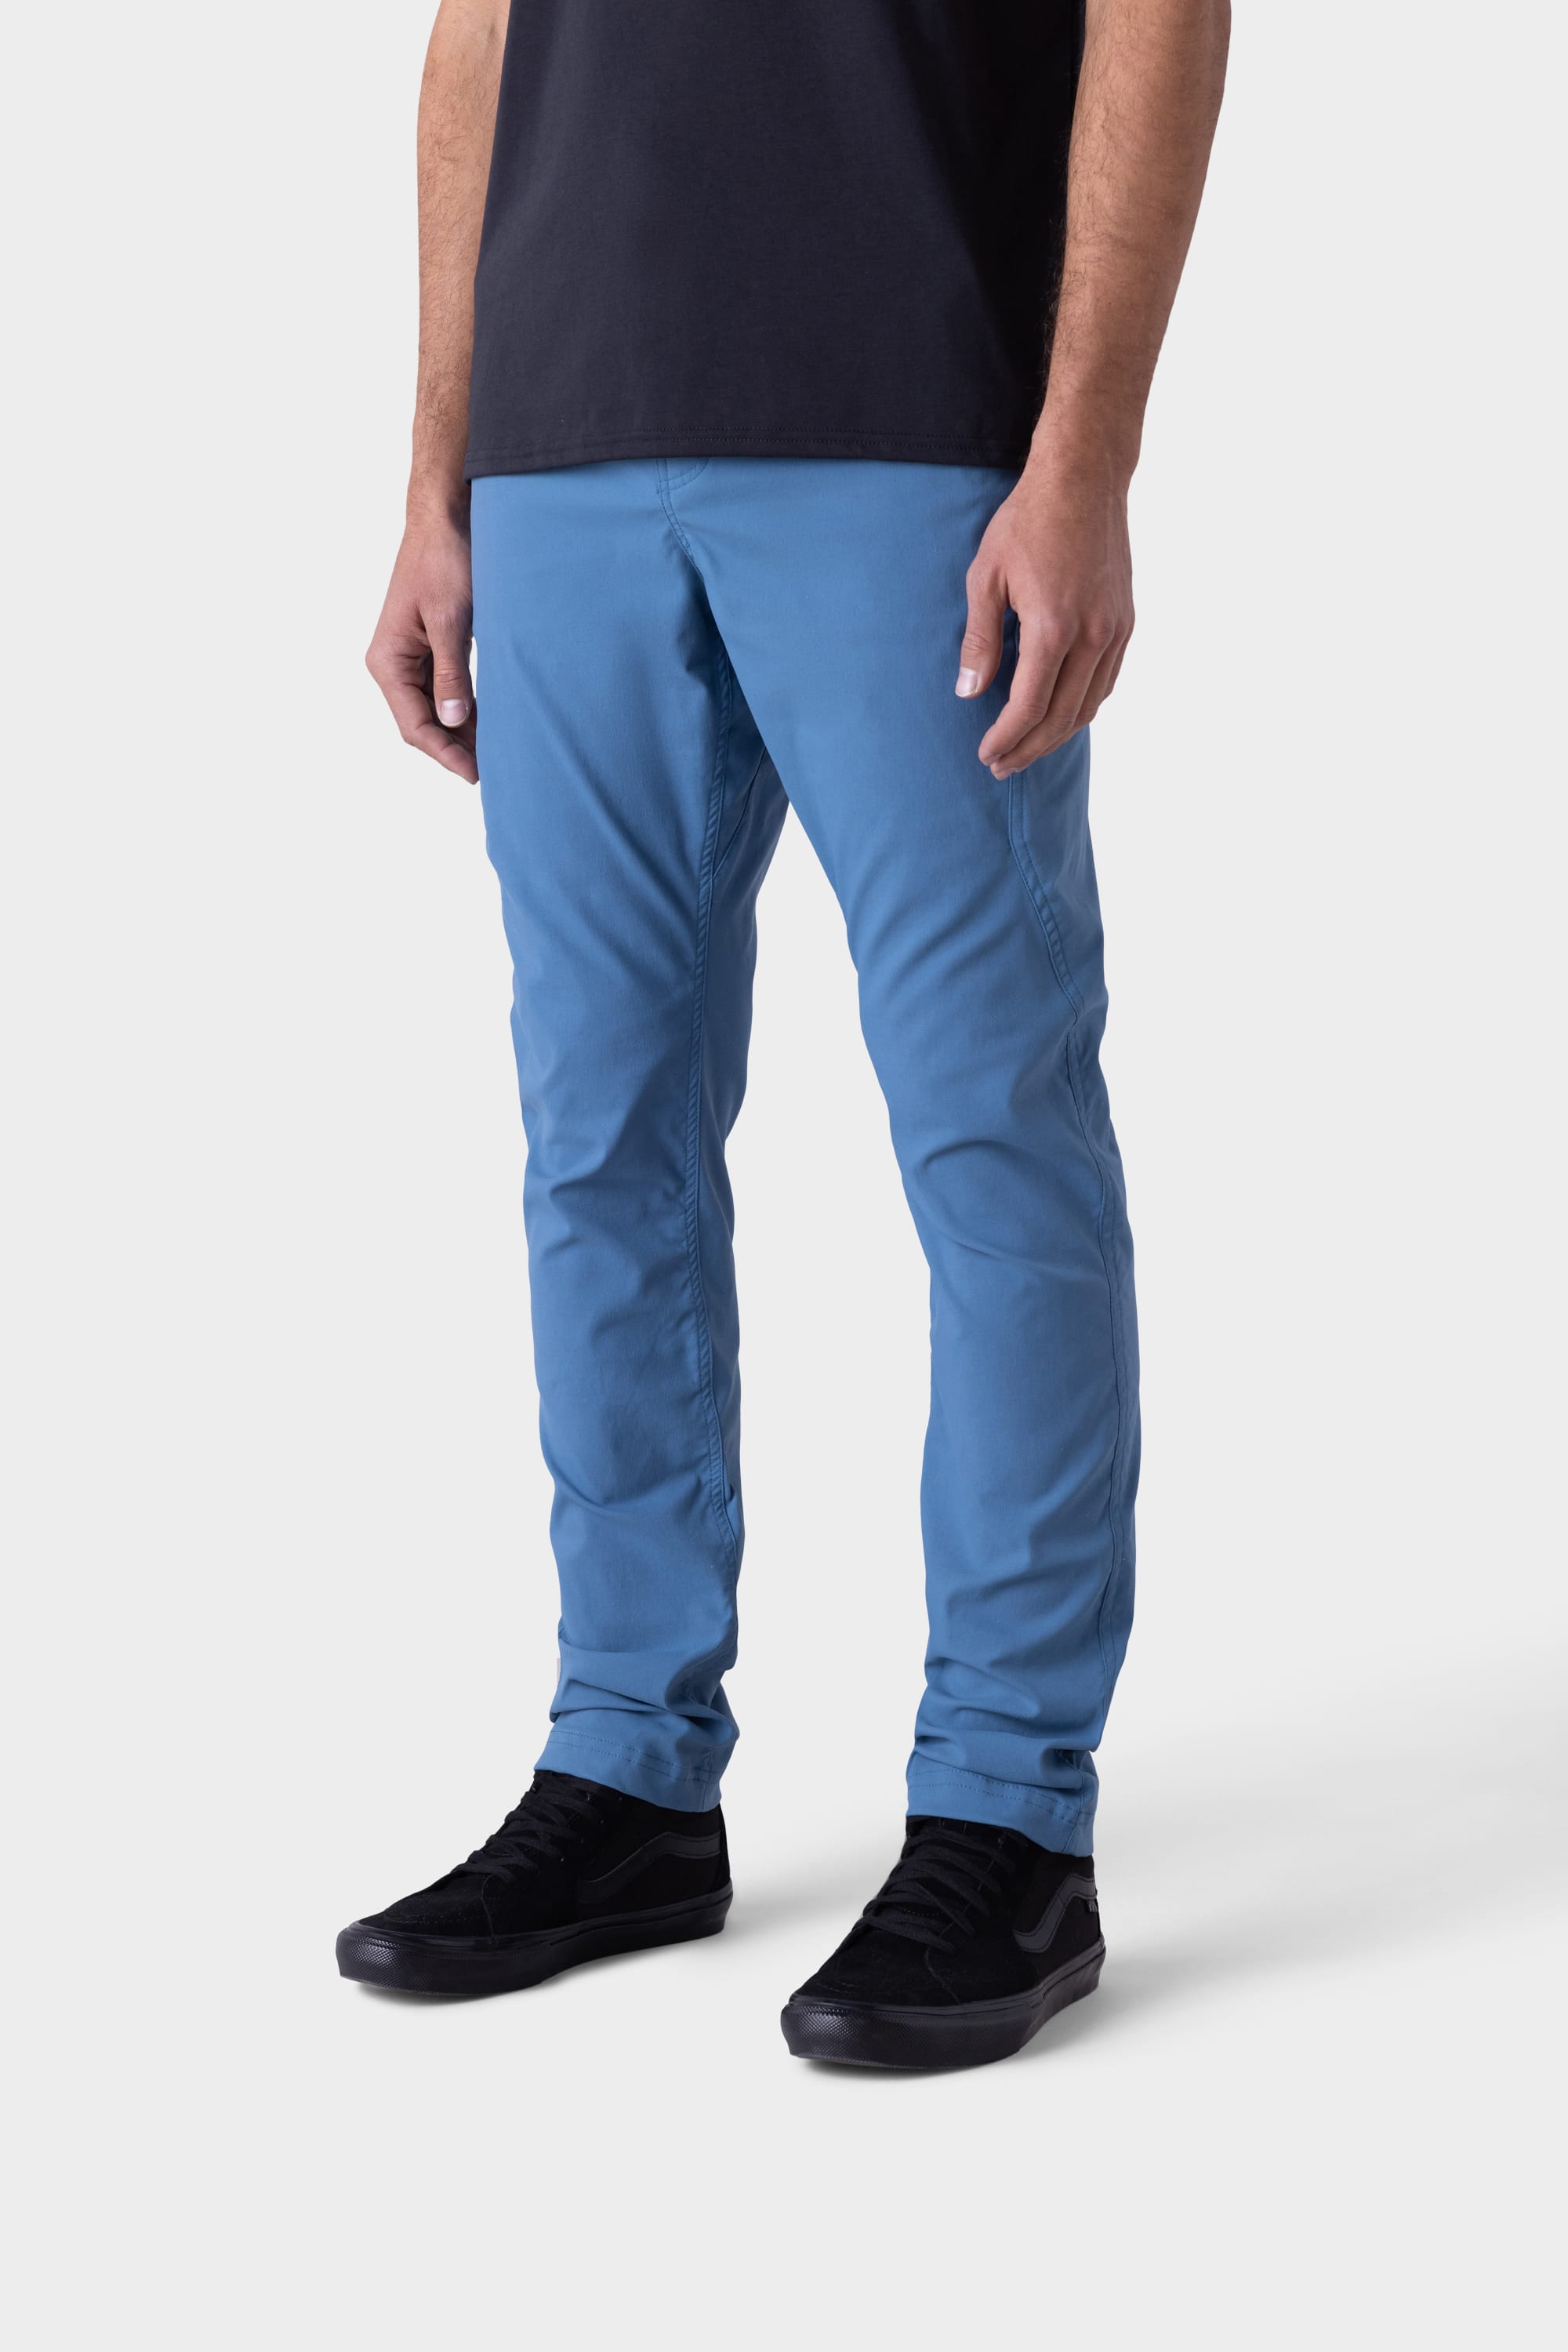 pants-size